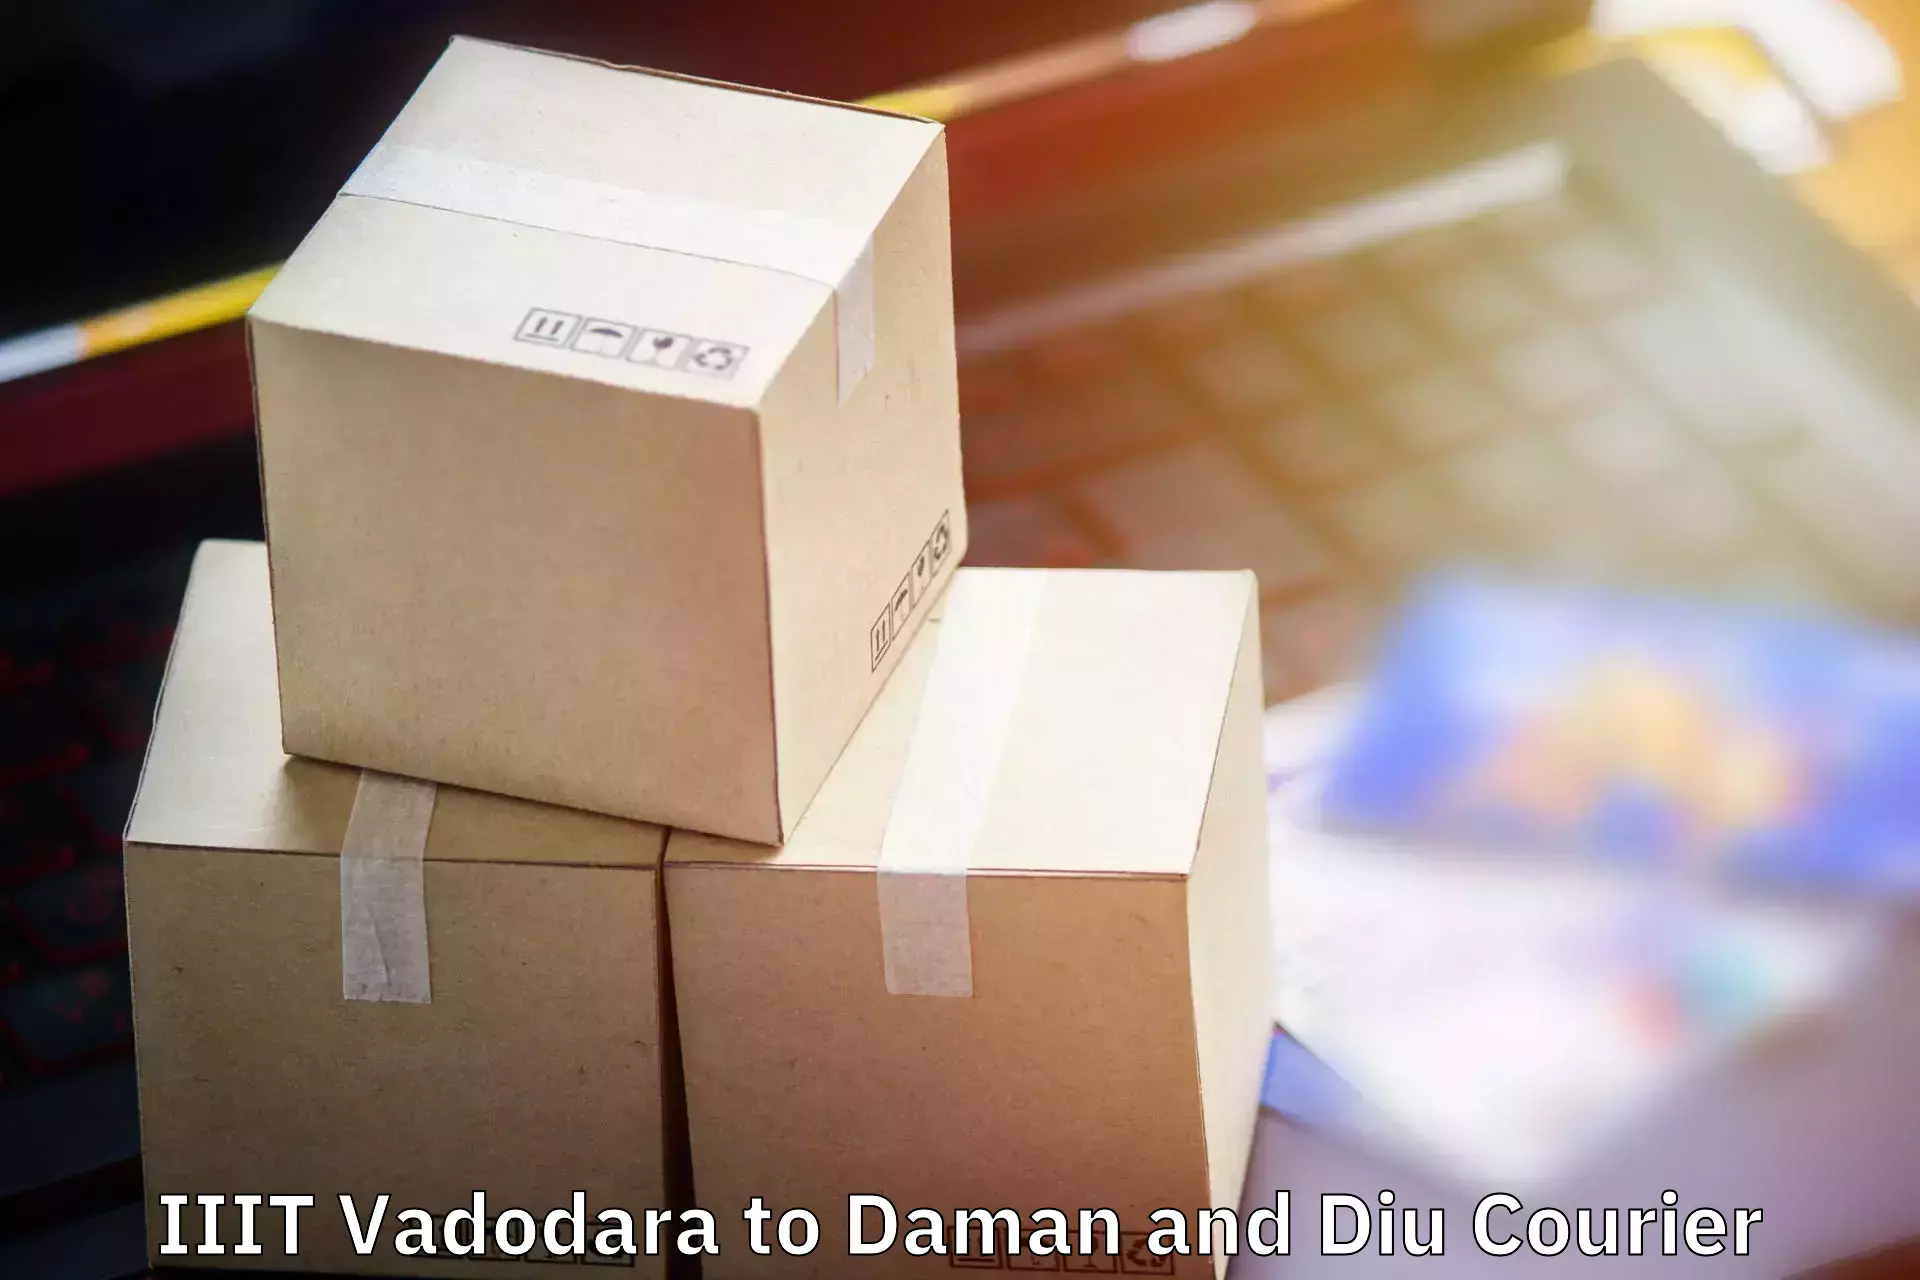 Baggage delivery estimate IIIT Vadodara to Daman